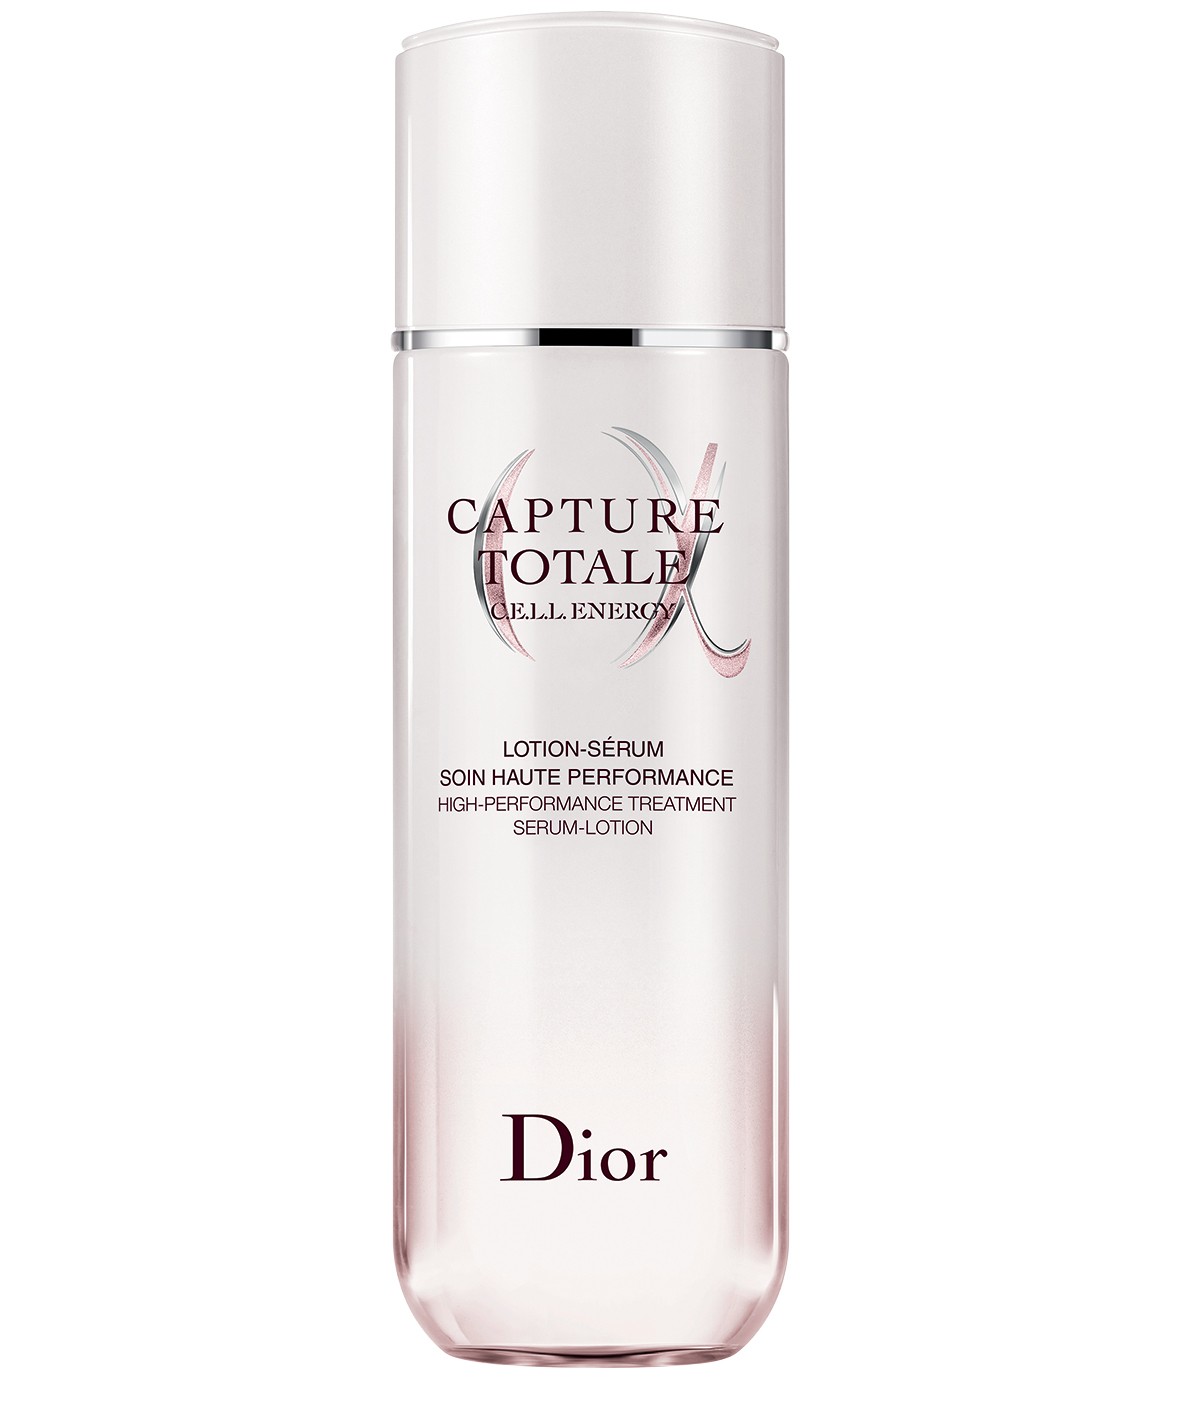 Beauty tudo - Creme Firmador para o Rosto Dior Capture Totale Cell Energy, R$ 639 (Foto: Otávio Malta)